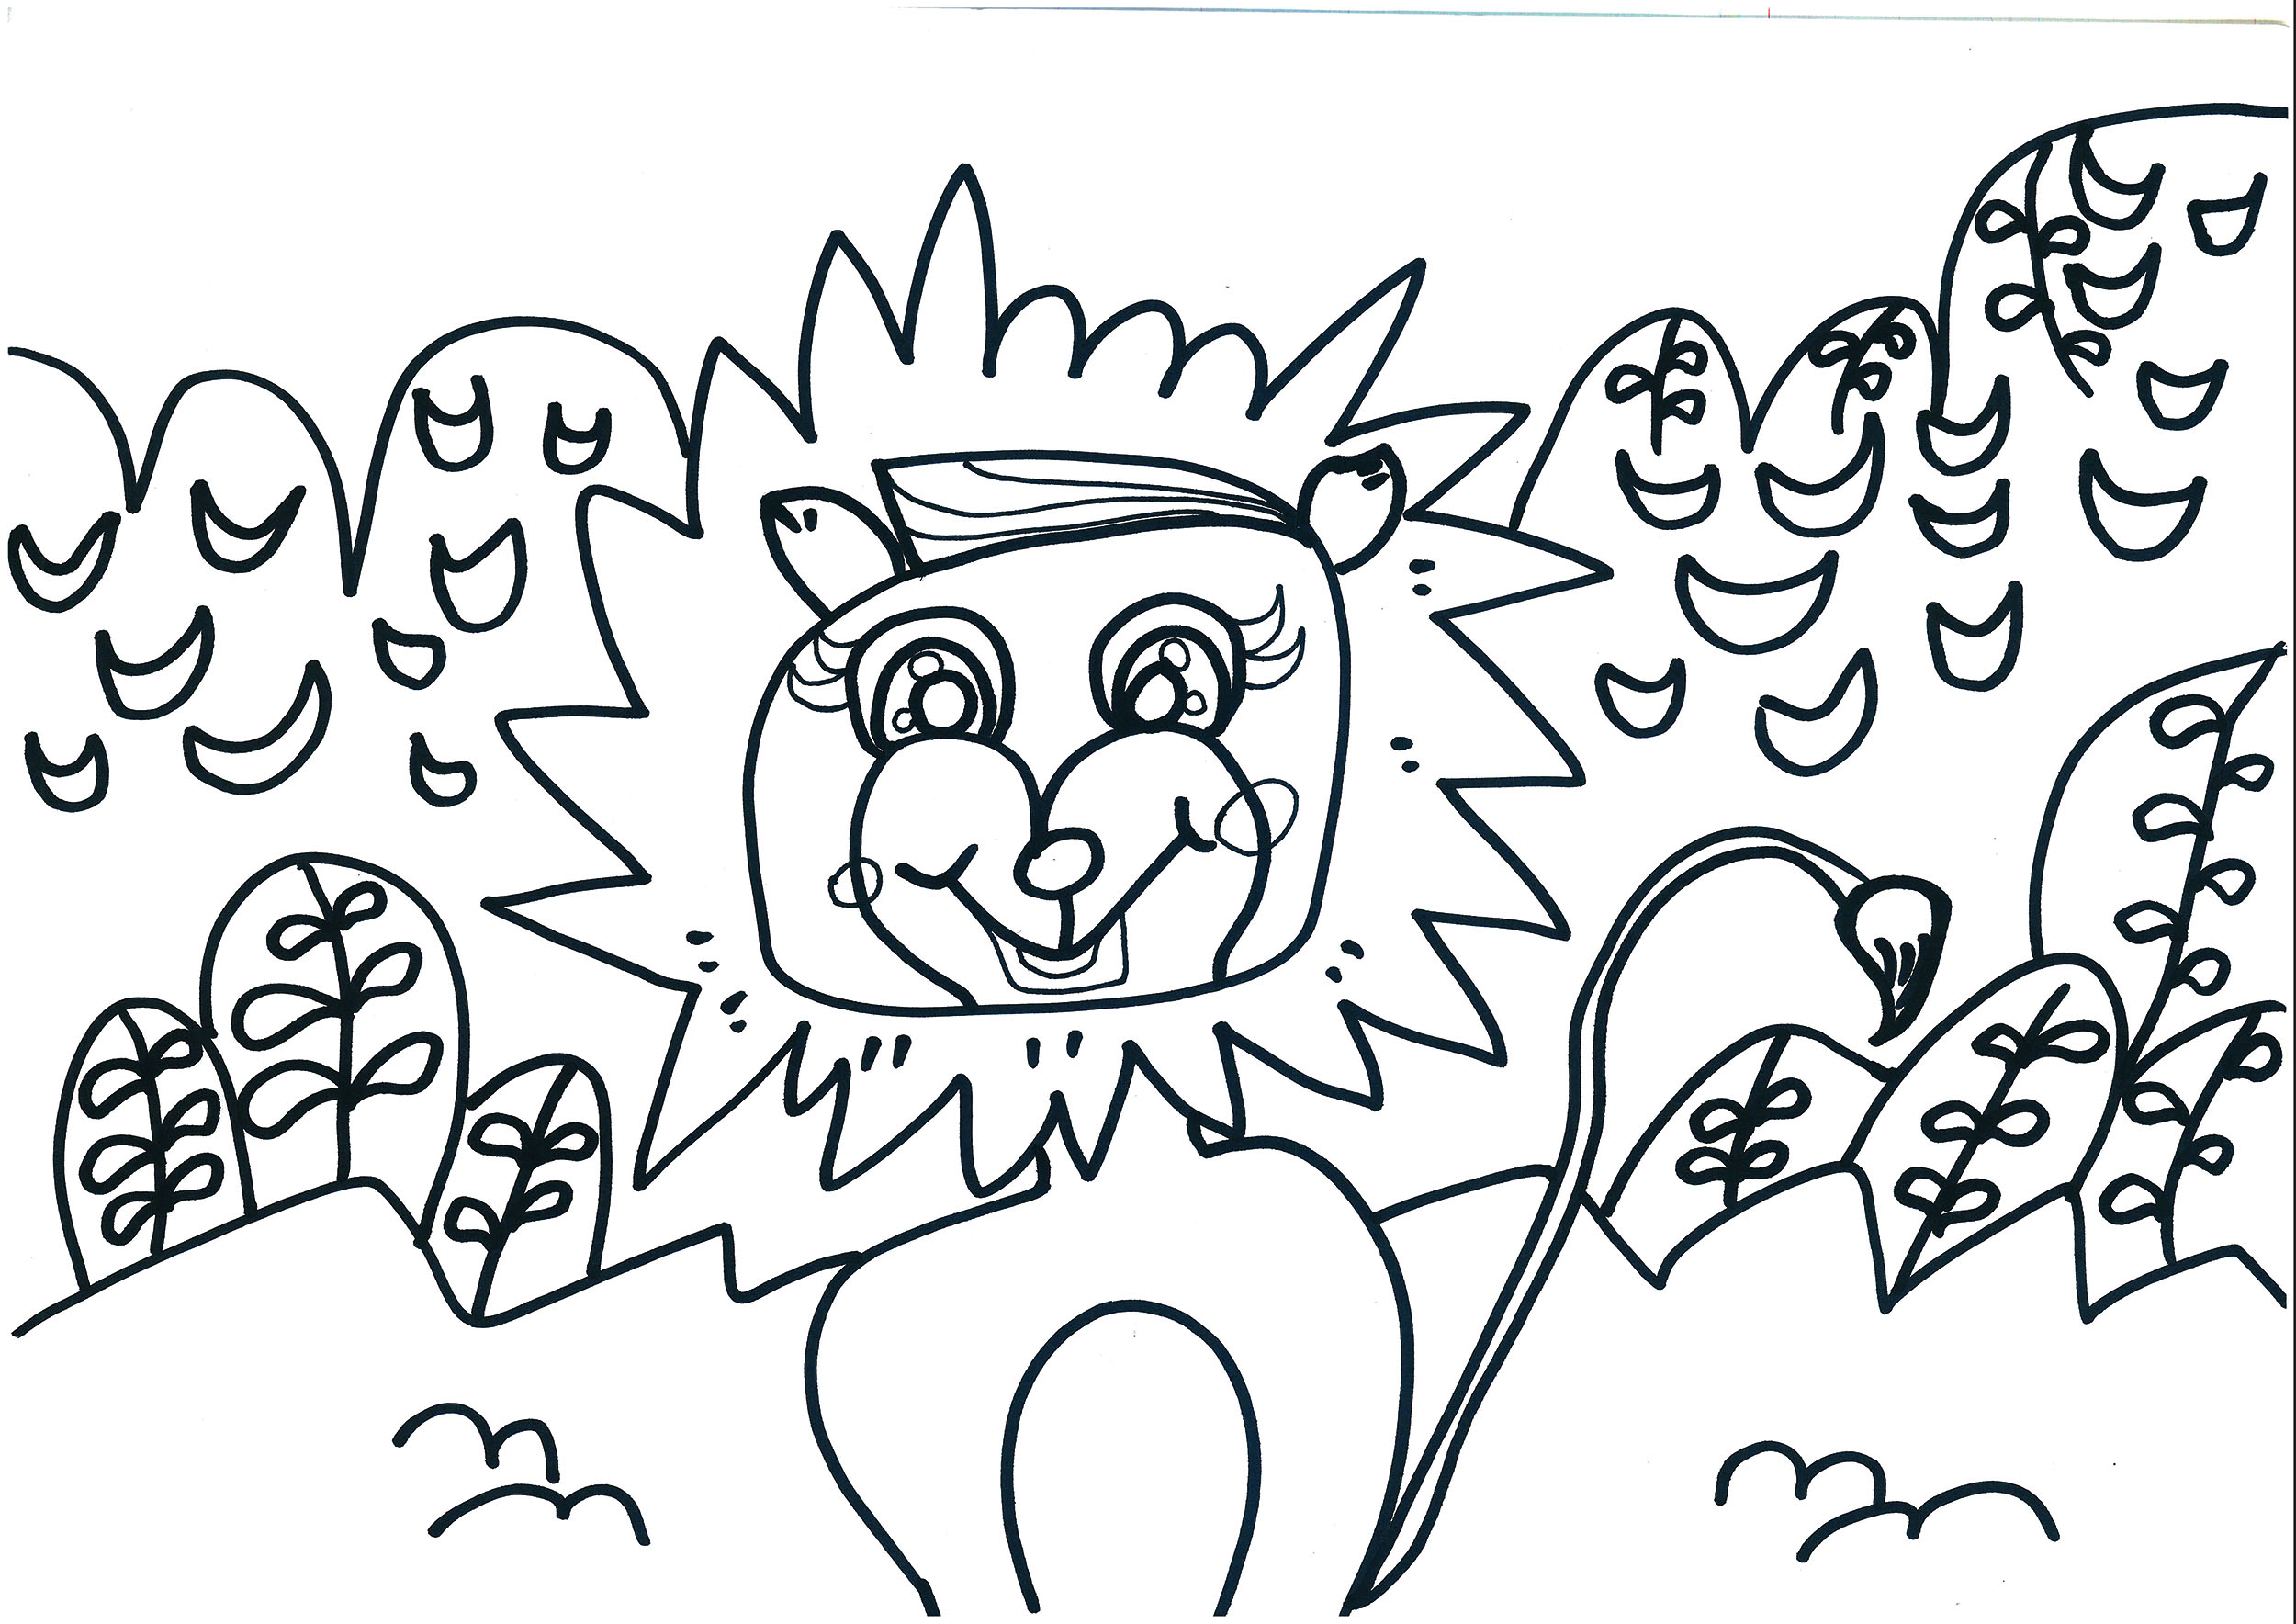 8岁可打印美术课程大图 狮子的故事手绘教程